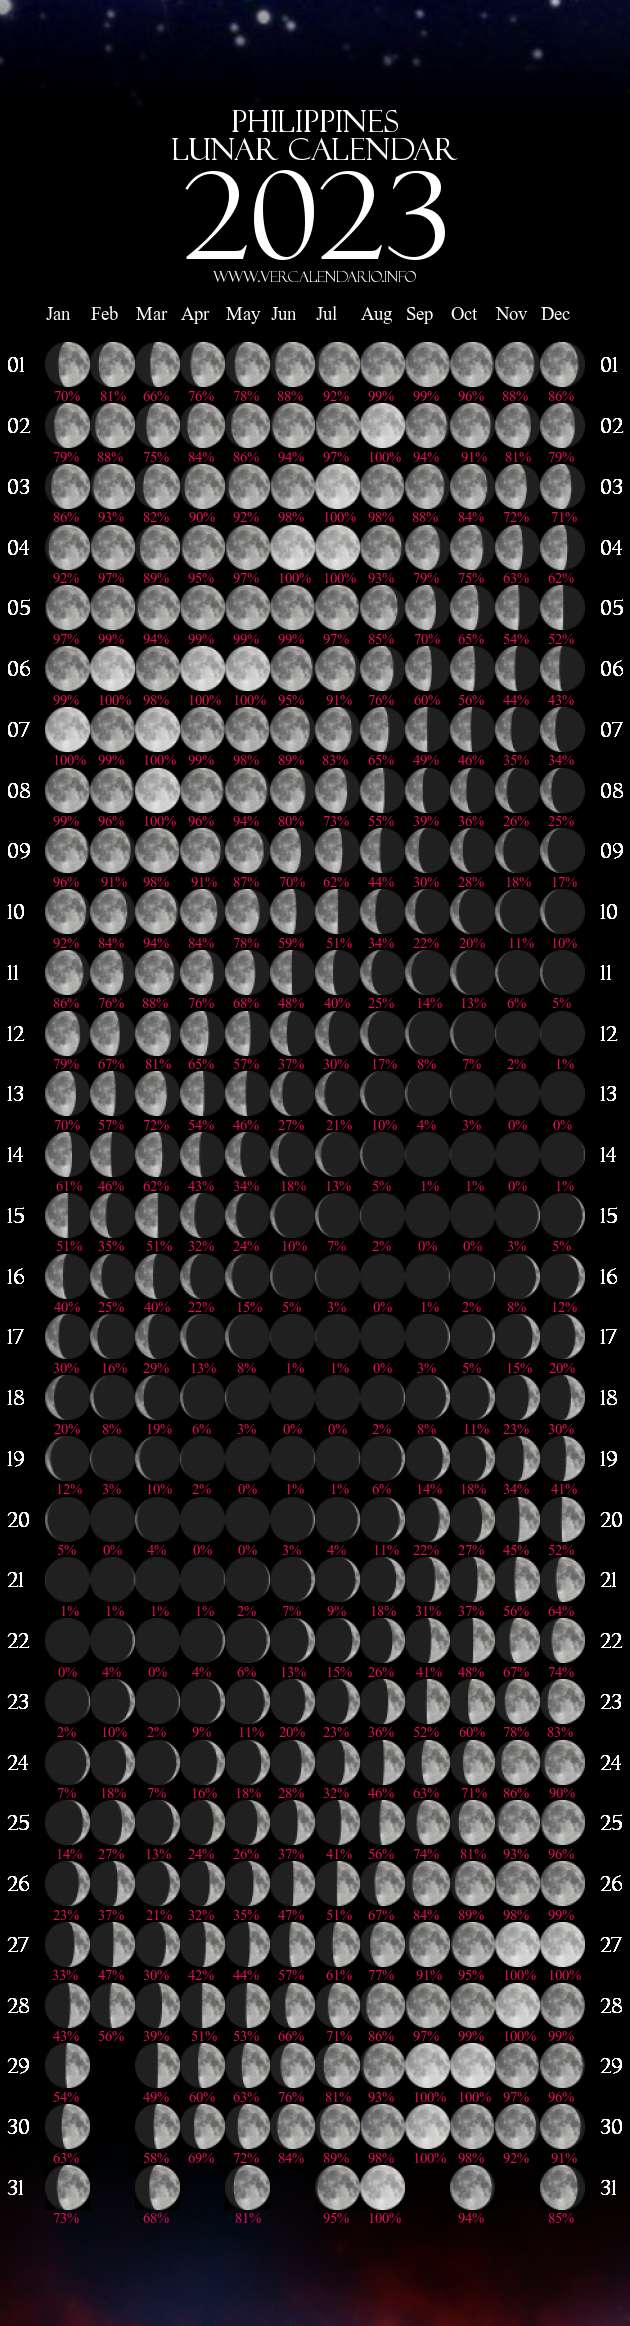 2023-moon-calendar-printable-printable-blank-world